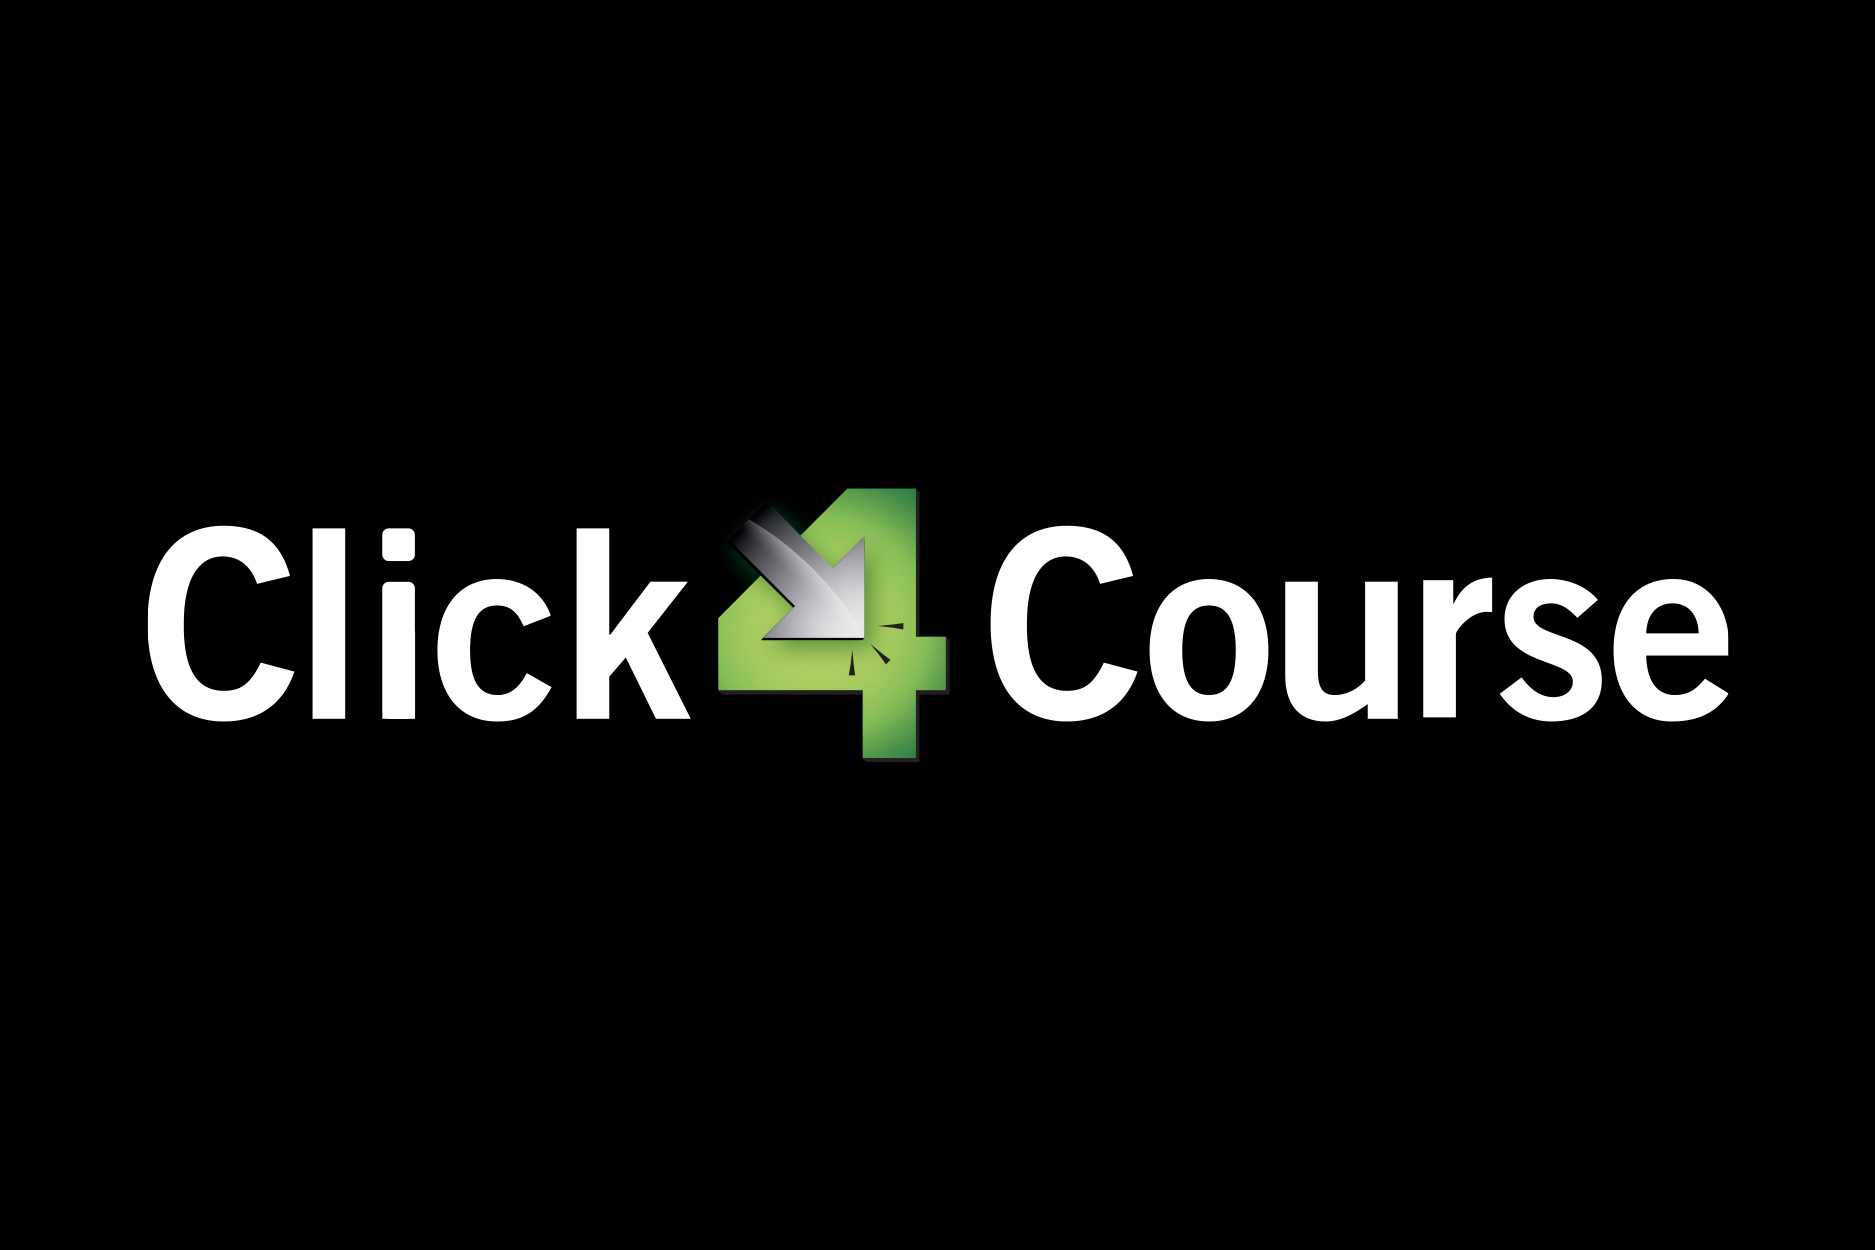 click 4 course logo design